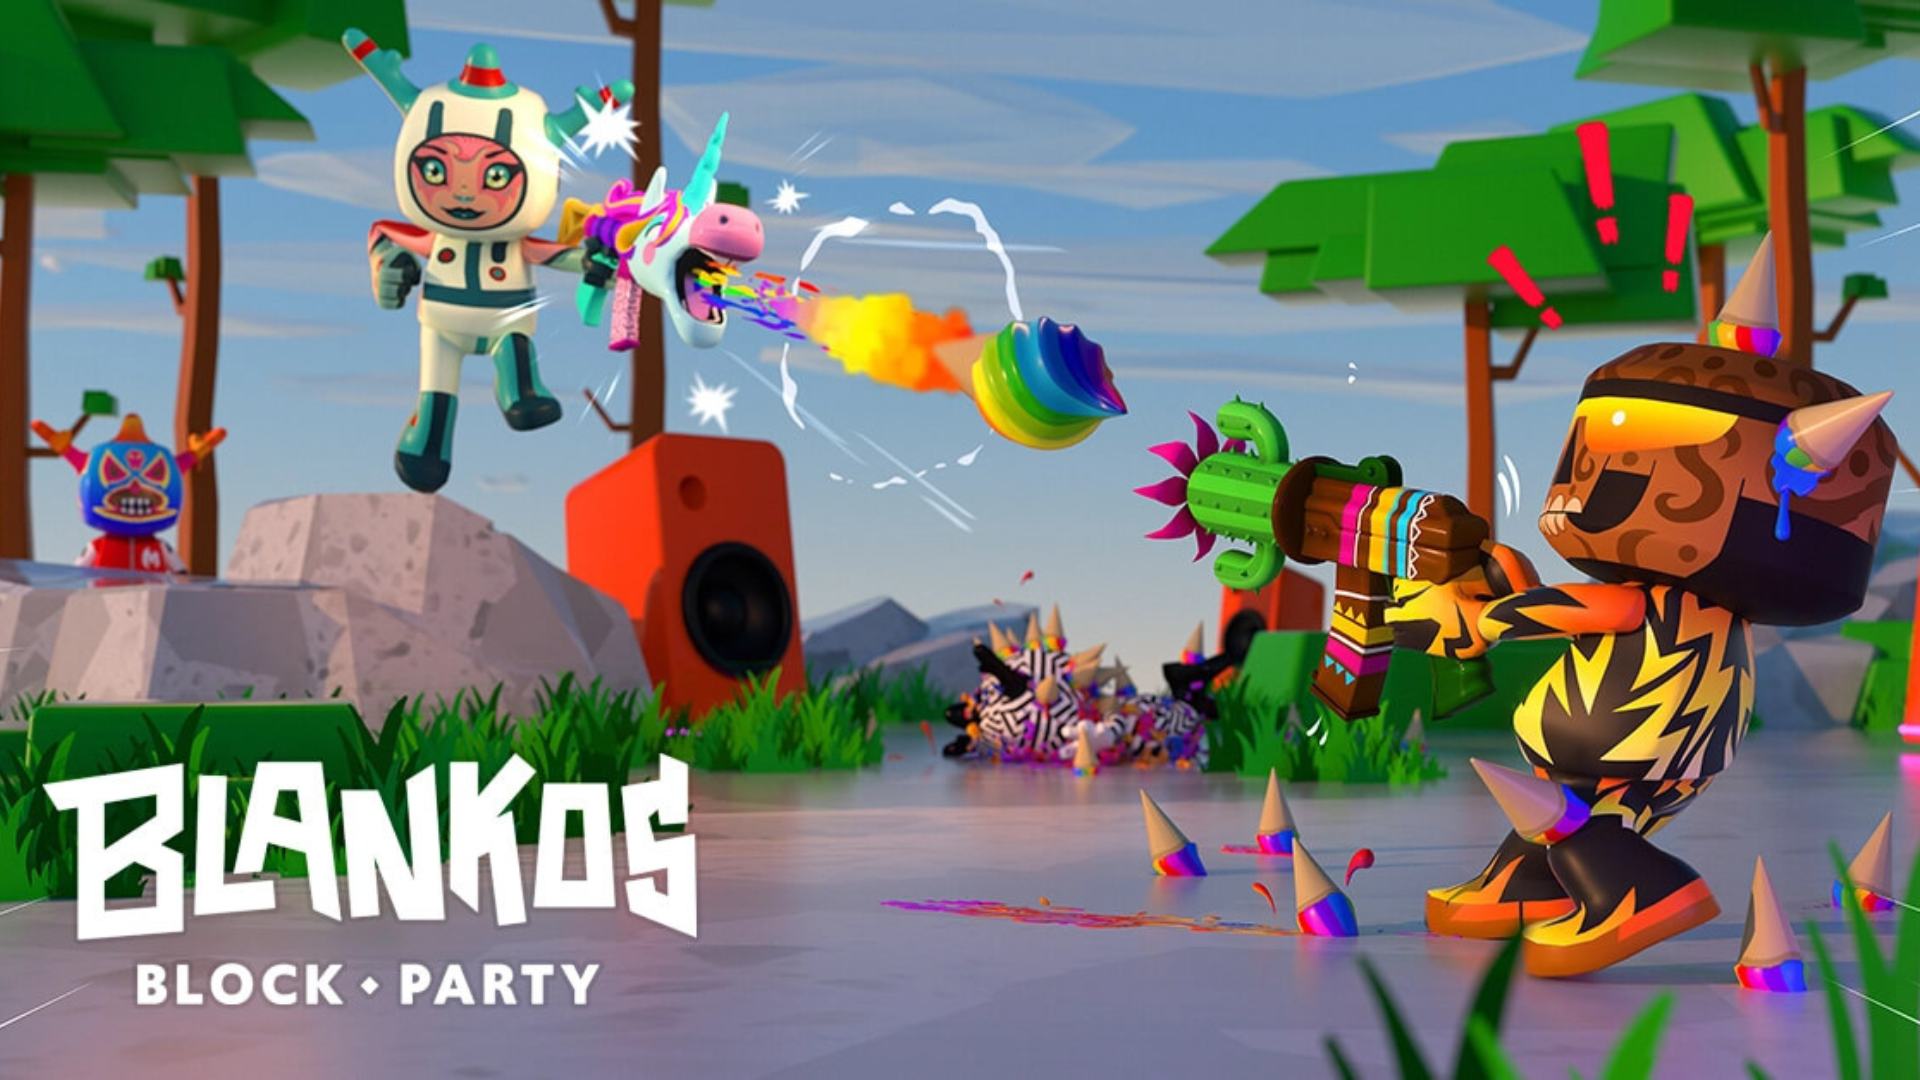 Game NFT, Blankos Block Party mulai tersedia di Epic Games Store pada 28 September 2022. Foto: Mythical Games.